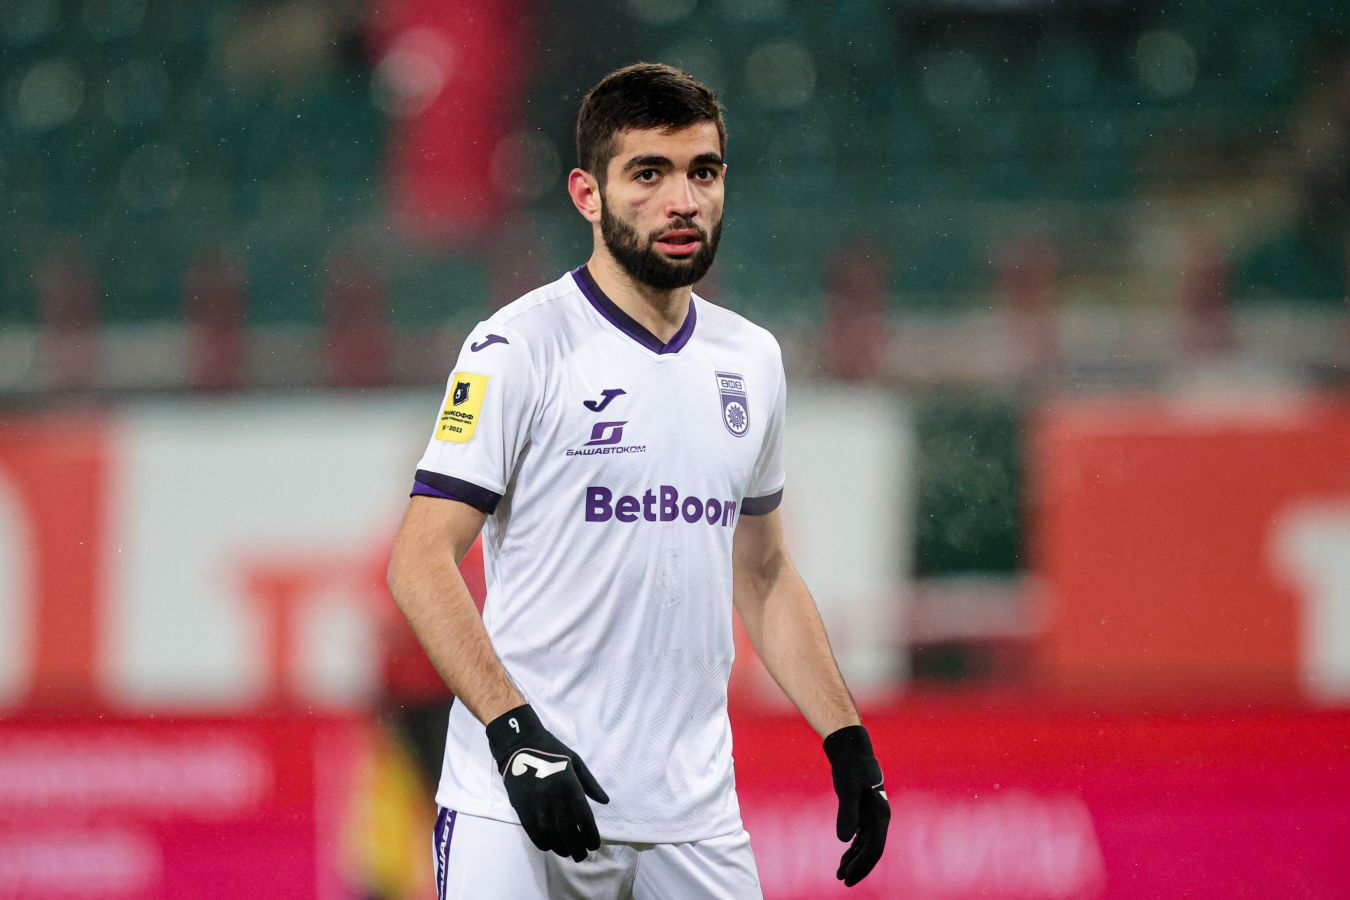 Гамид Агаларов забил 19-й гол в сезоне-2021/2022